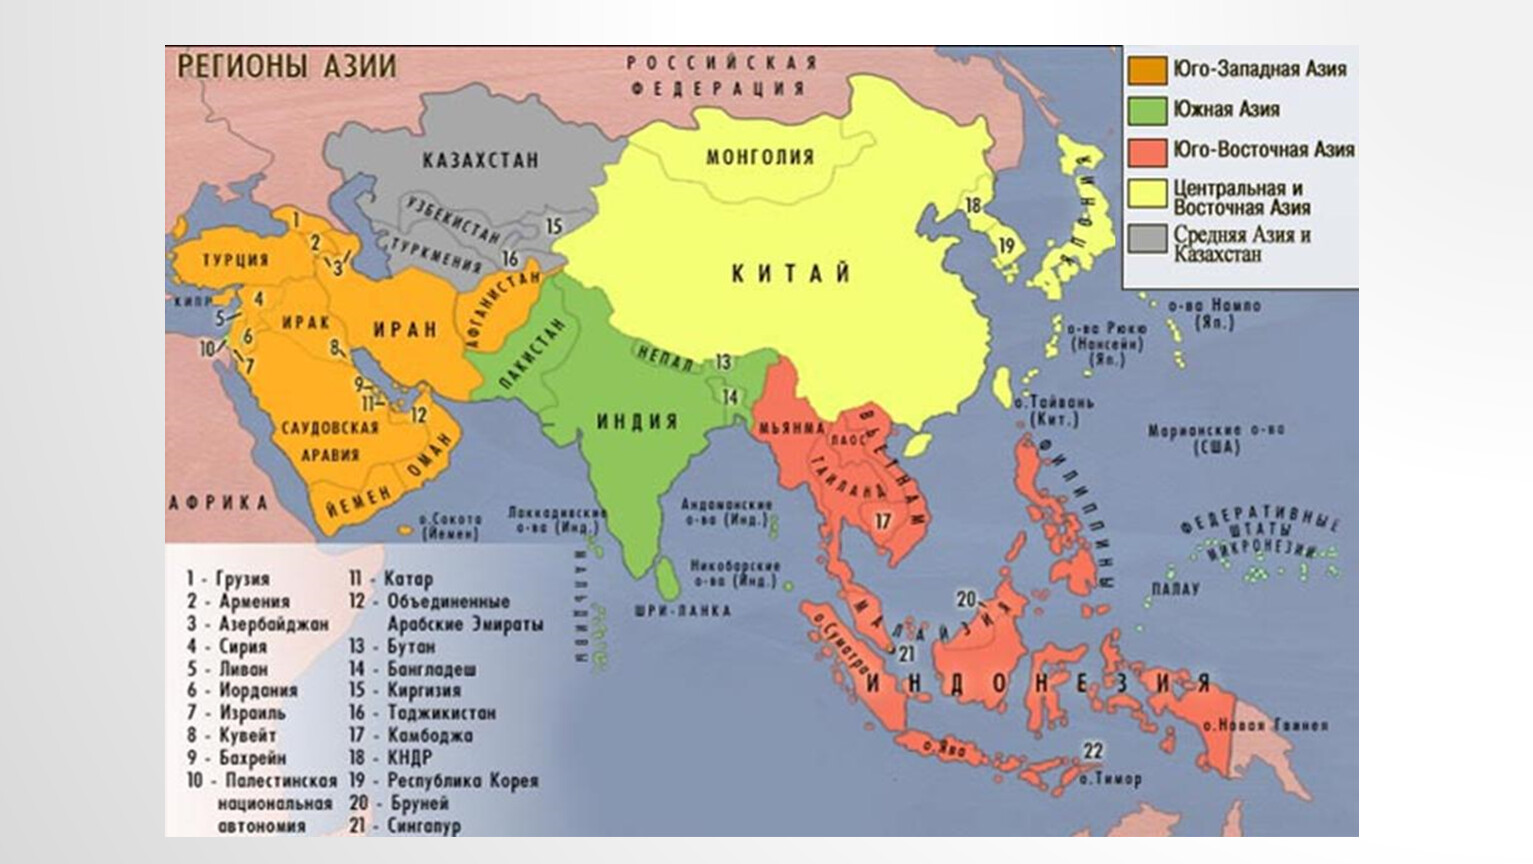 Страны азии по форме правления